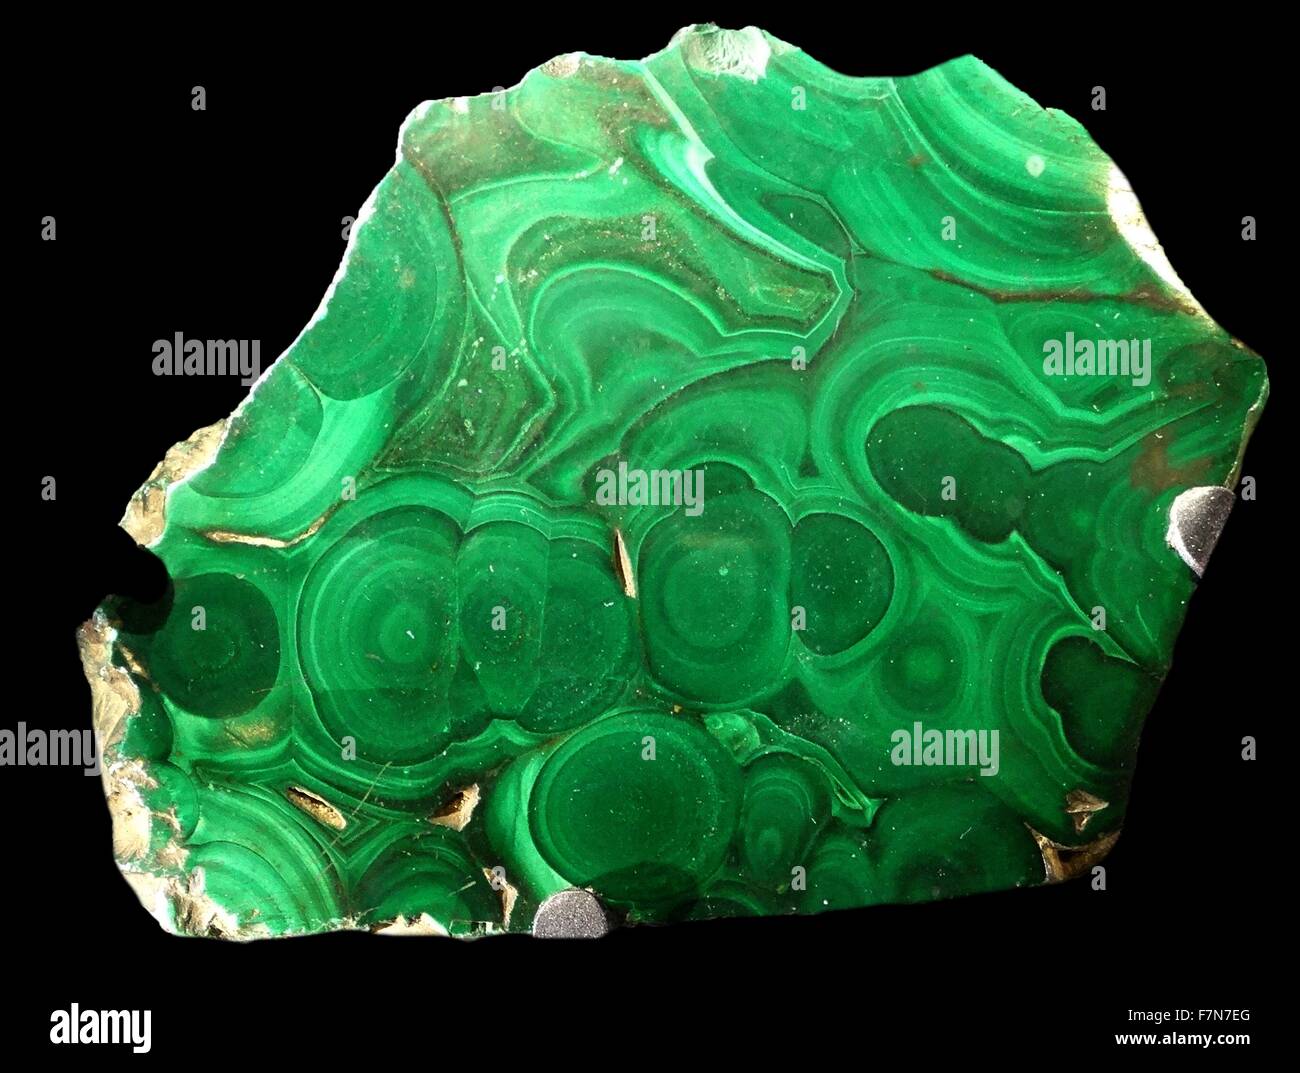 Les bandes de vert de malachite est à cause de la façon dont le rock formé résultant en couches avec différentes tailles de cristal. Le plus foncé le bandes ont gros cristaux de bandes plus claires. 2014 Banque D'Images